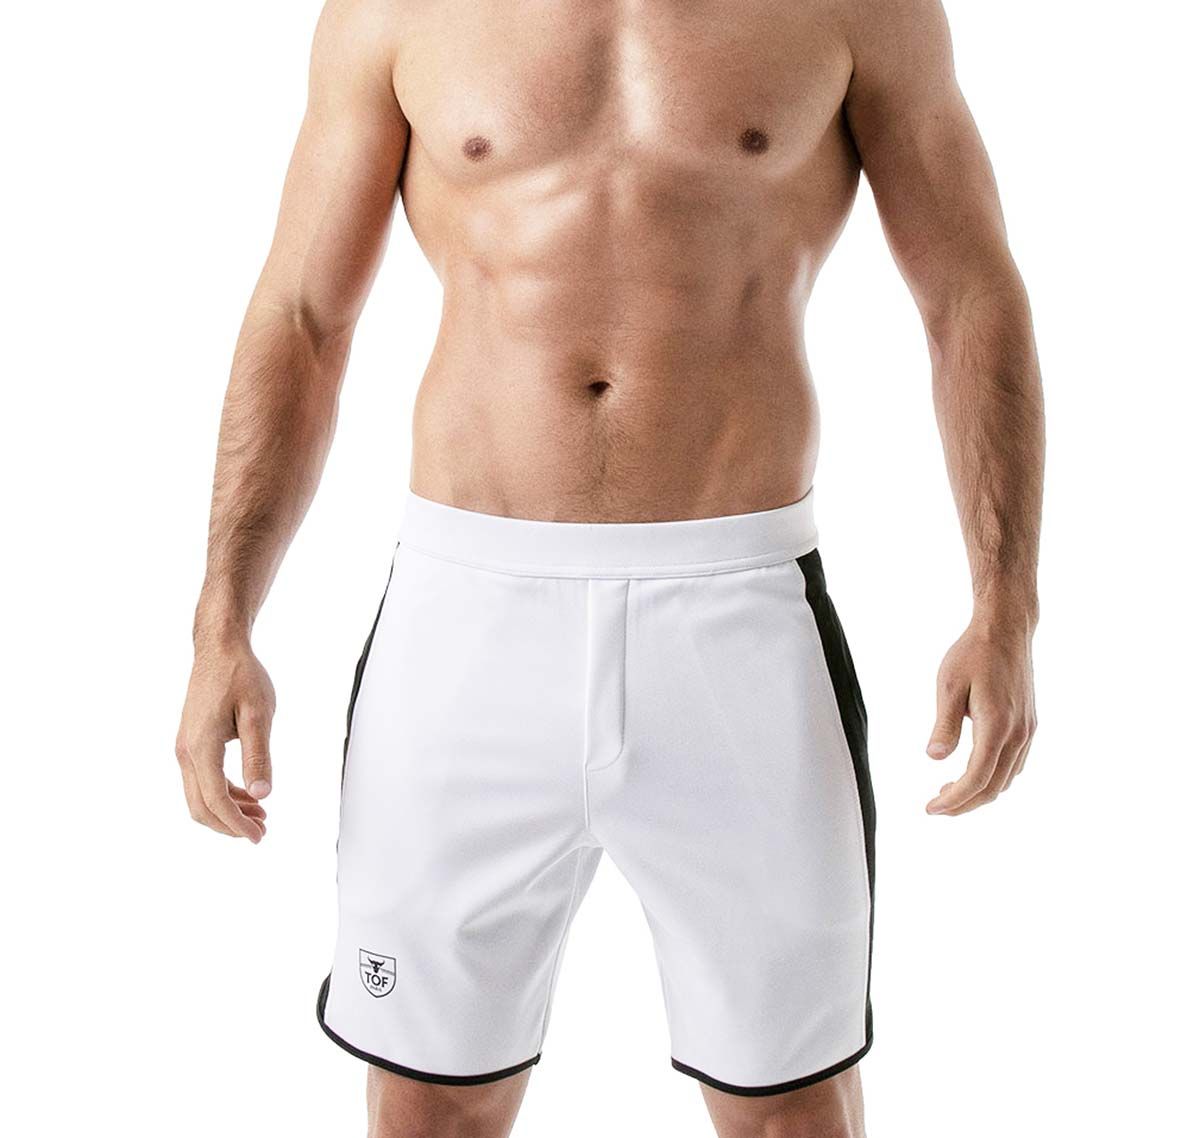 TOF Pantaloni sportivi corti GYM LONG SHORTS WHITE TOF146B, bianco